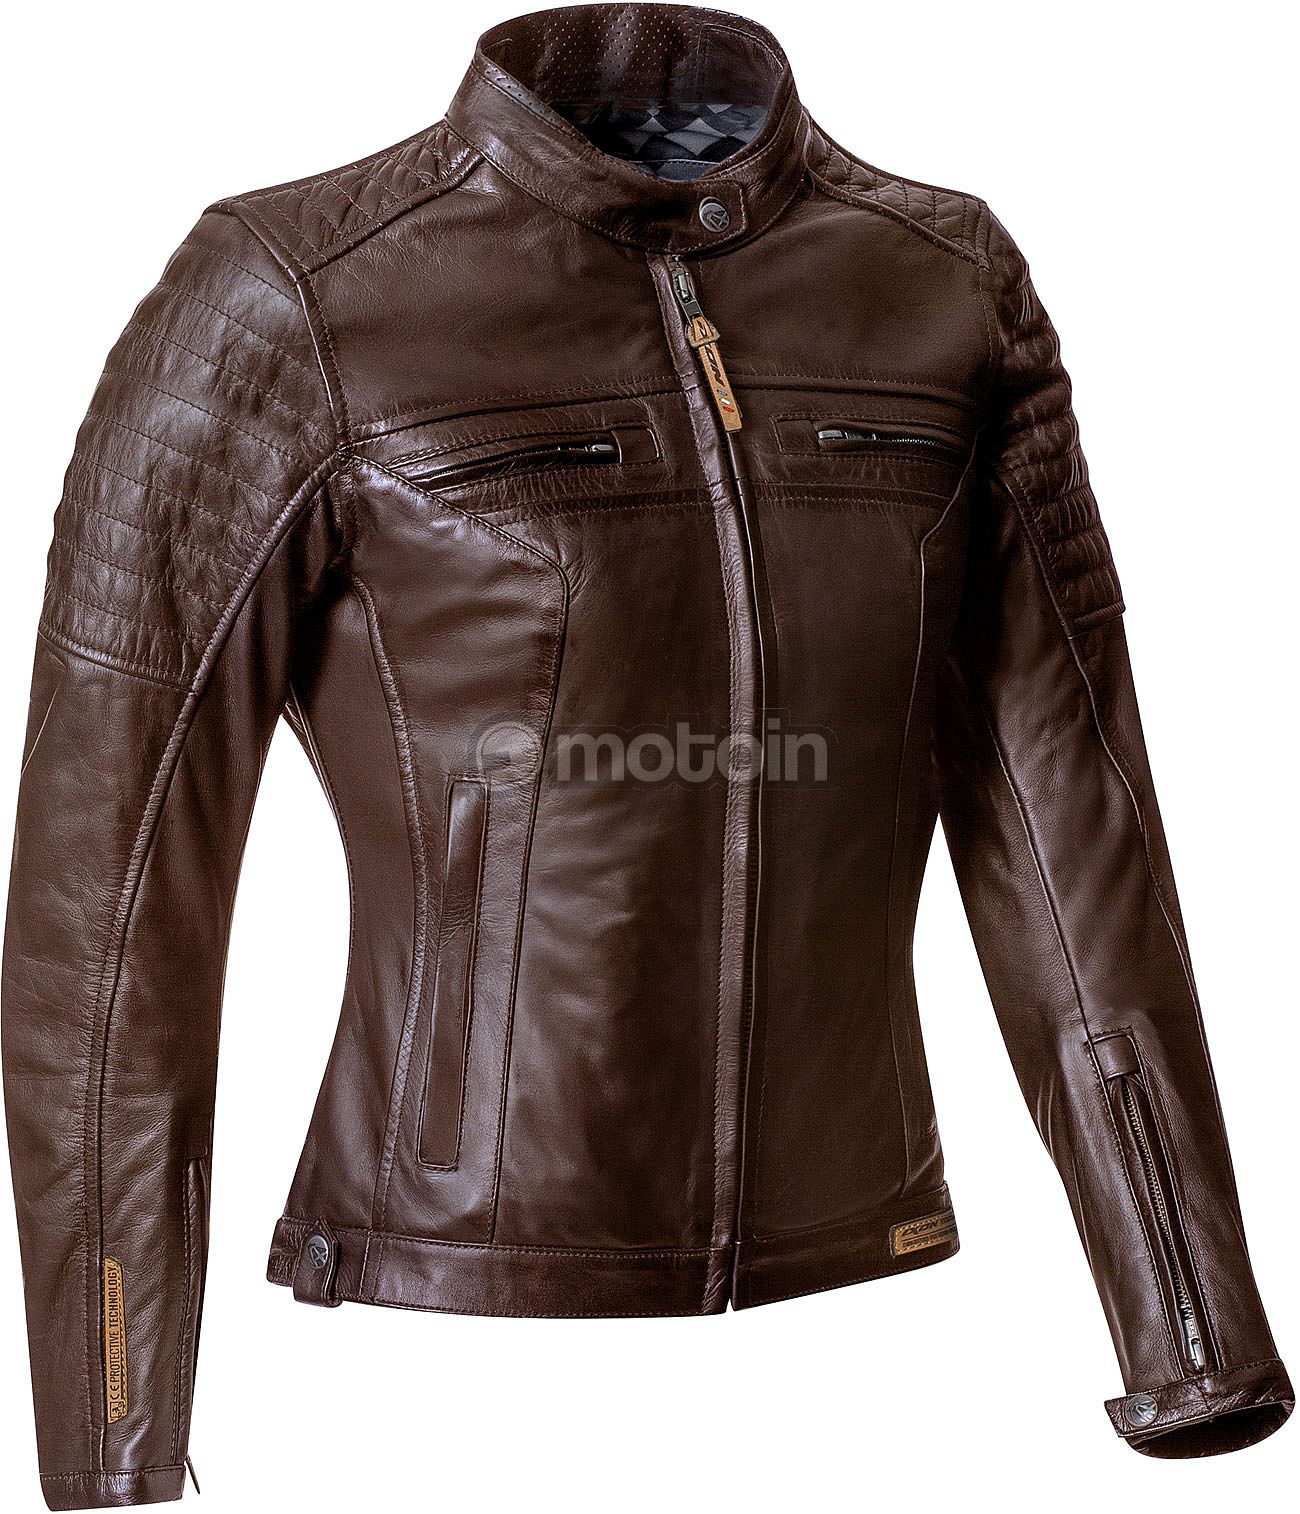 Ixon Torque, leather jacket waterproof women - motoin.de